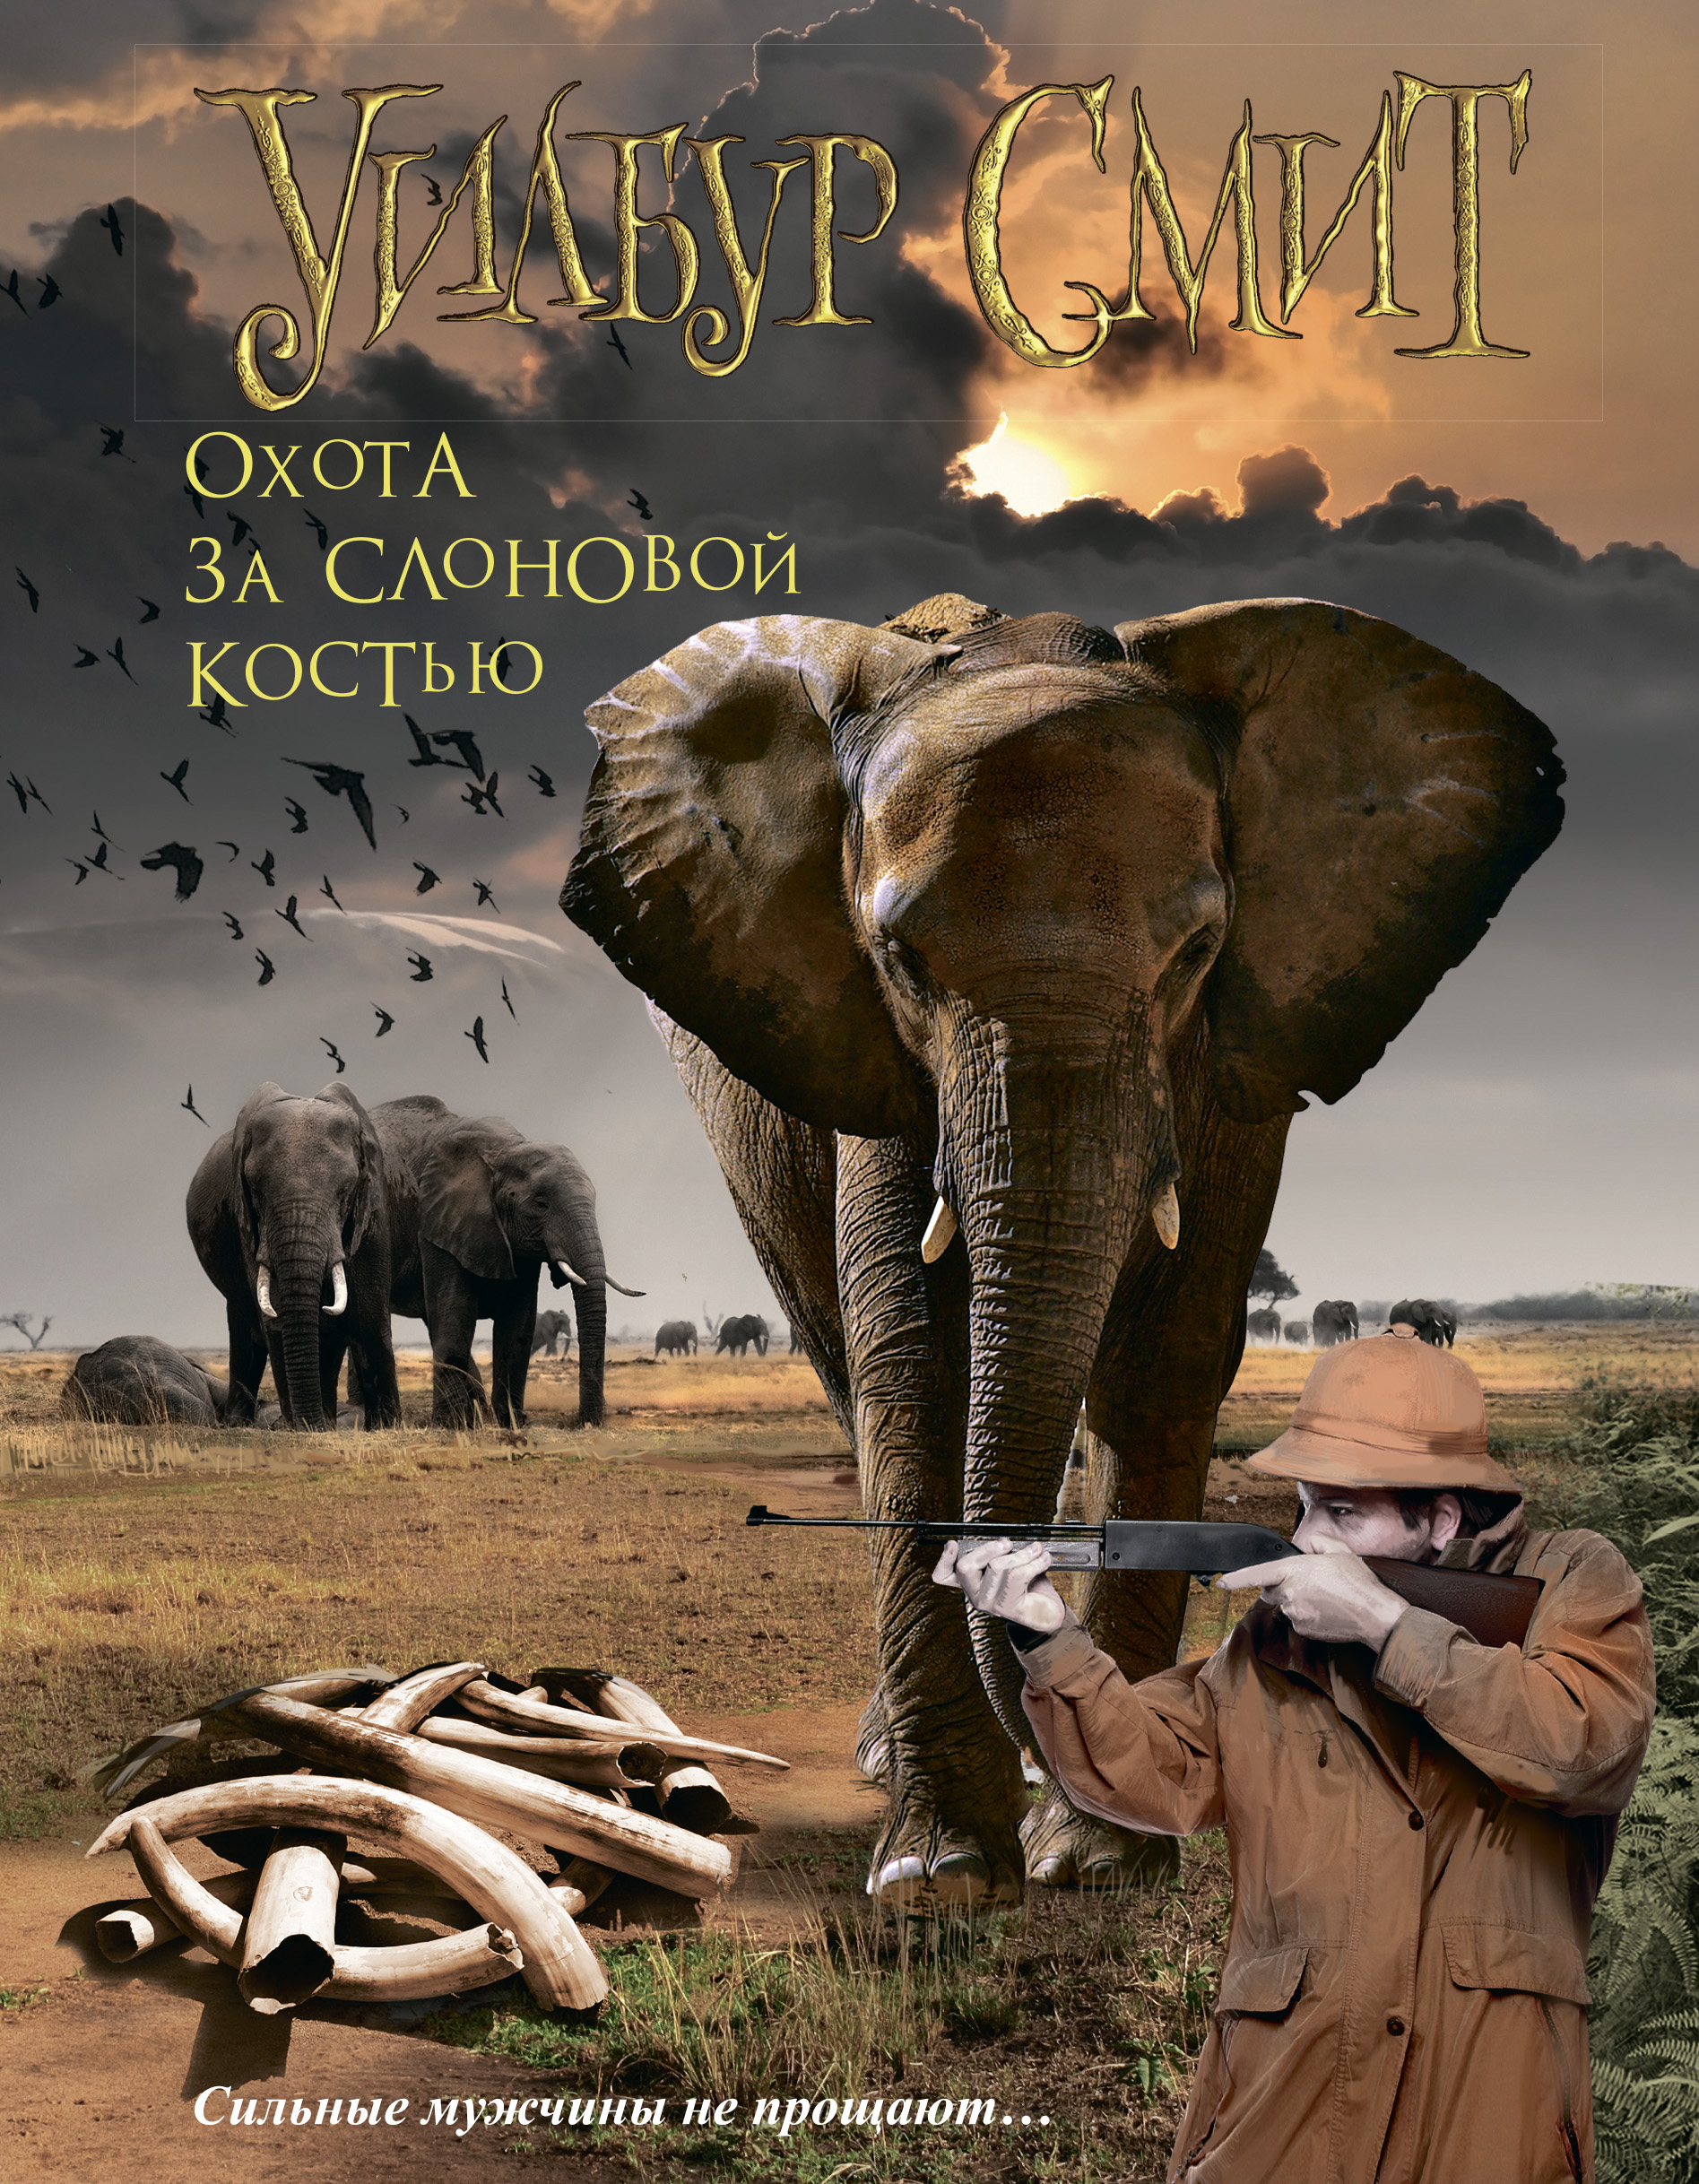 Приключение про африку. Охота за слоновой костью Уилбур Смит. Обложка книги охота за слоновой костью. Книги про приключения в Африке. Книги об охоте в Африке.